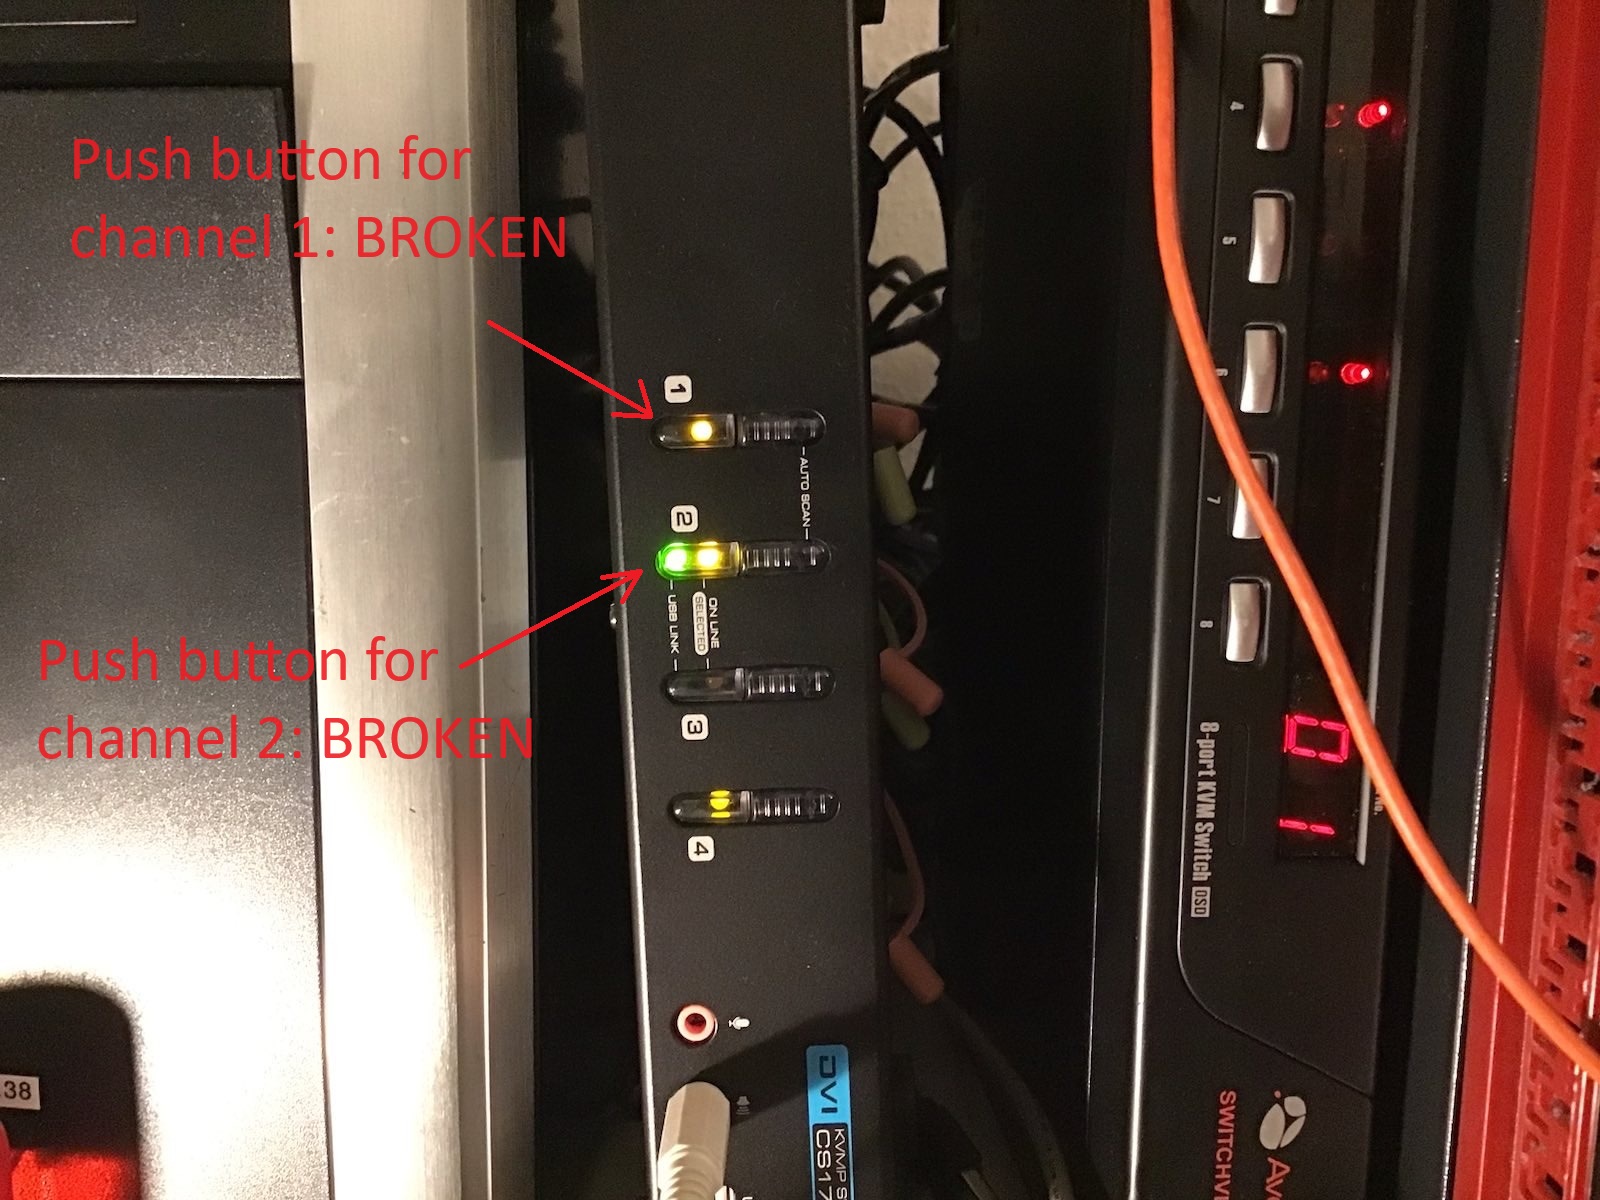 The broken 4 port KVM switch